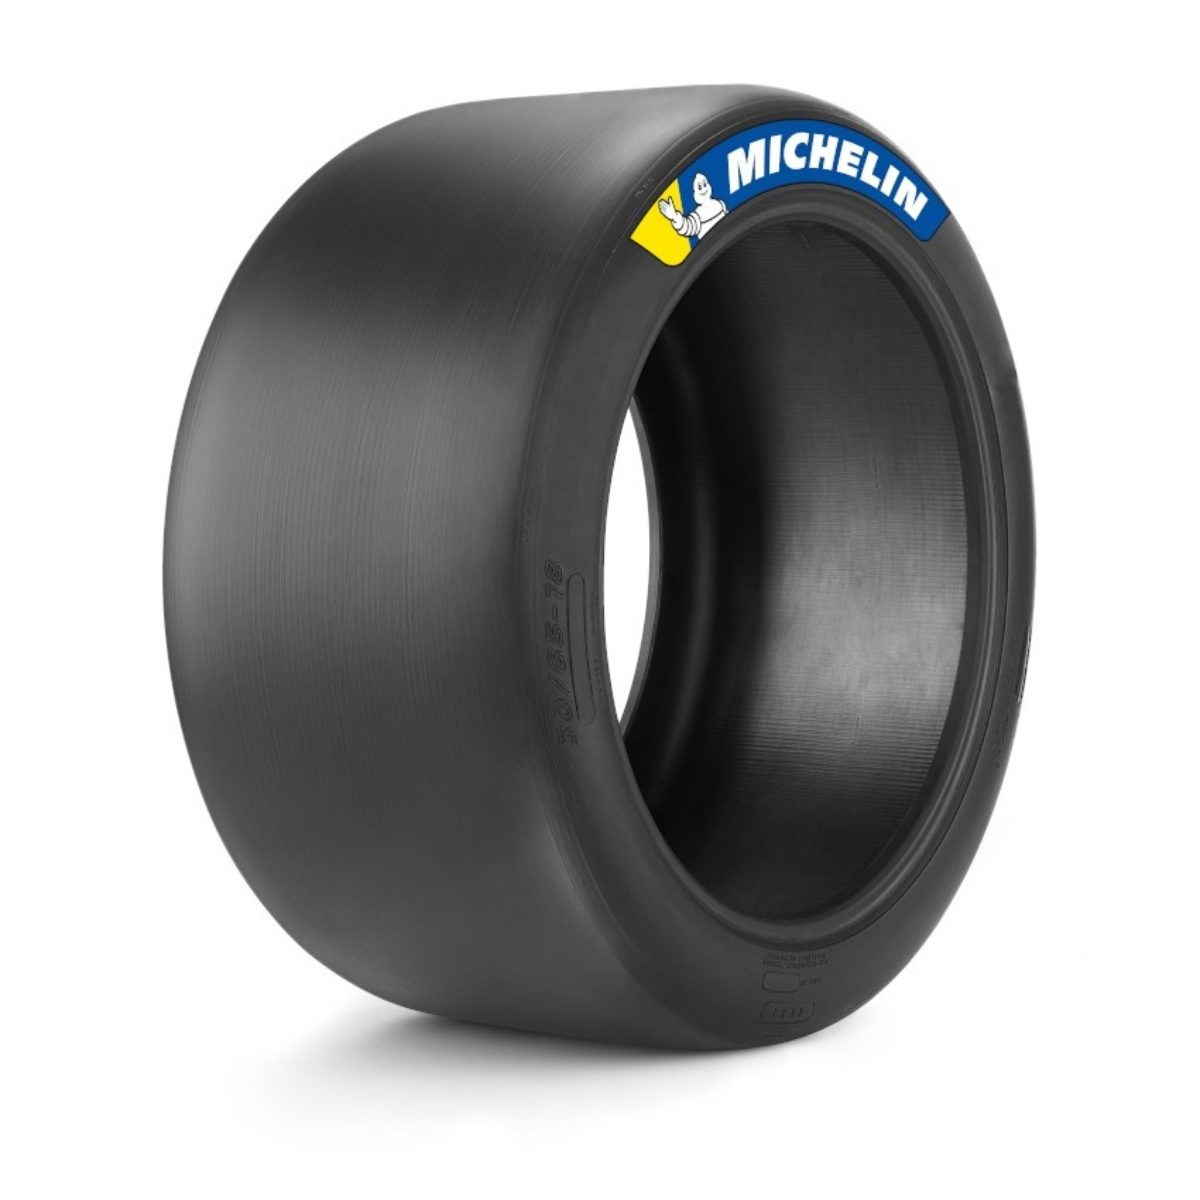 Слики резина. Michelin слики. Michelin гоночные слики. Michelin Racing Tire 31/71-18. Слики Мишлен пилот спорт gt.